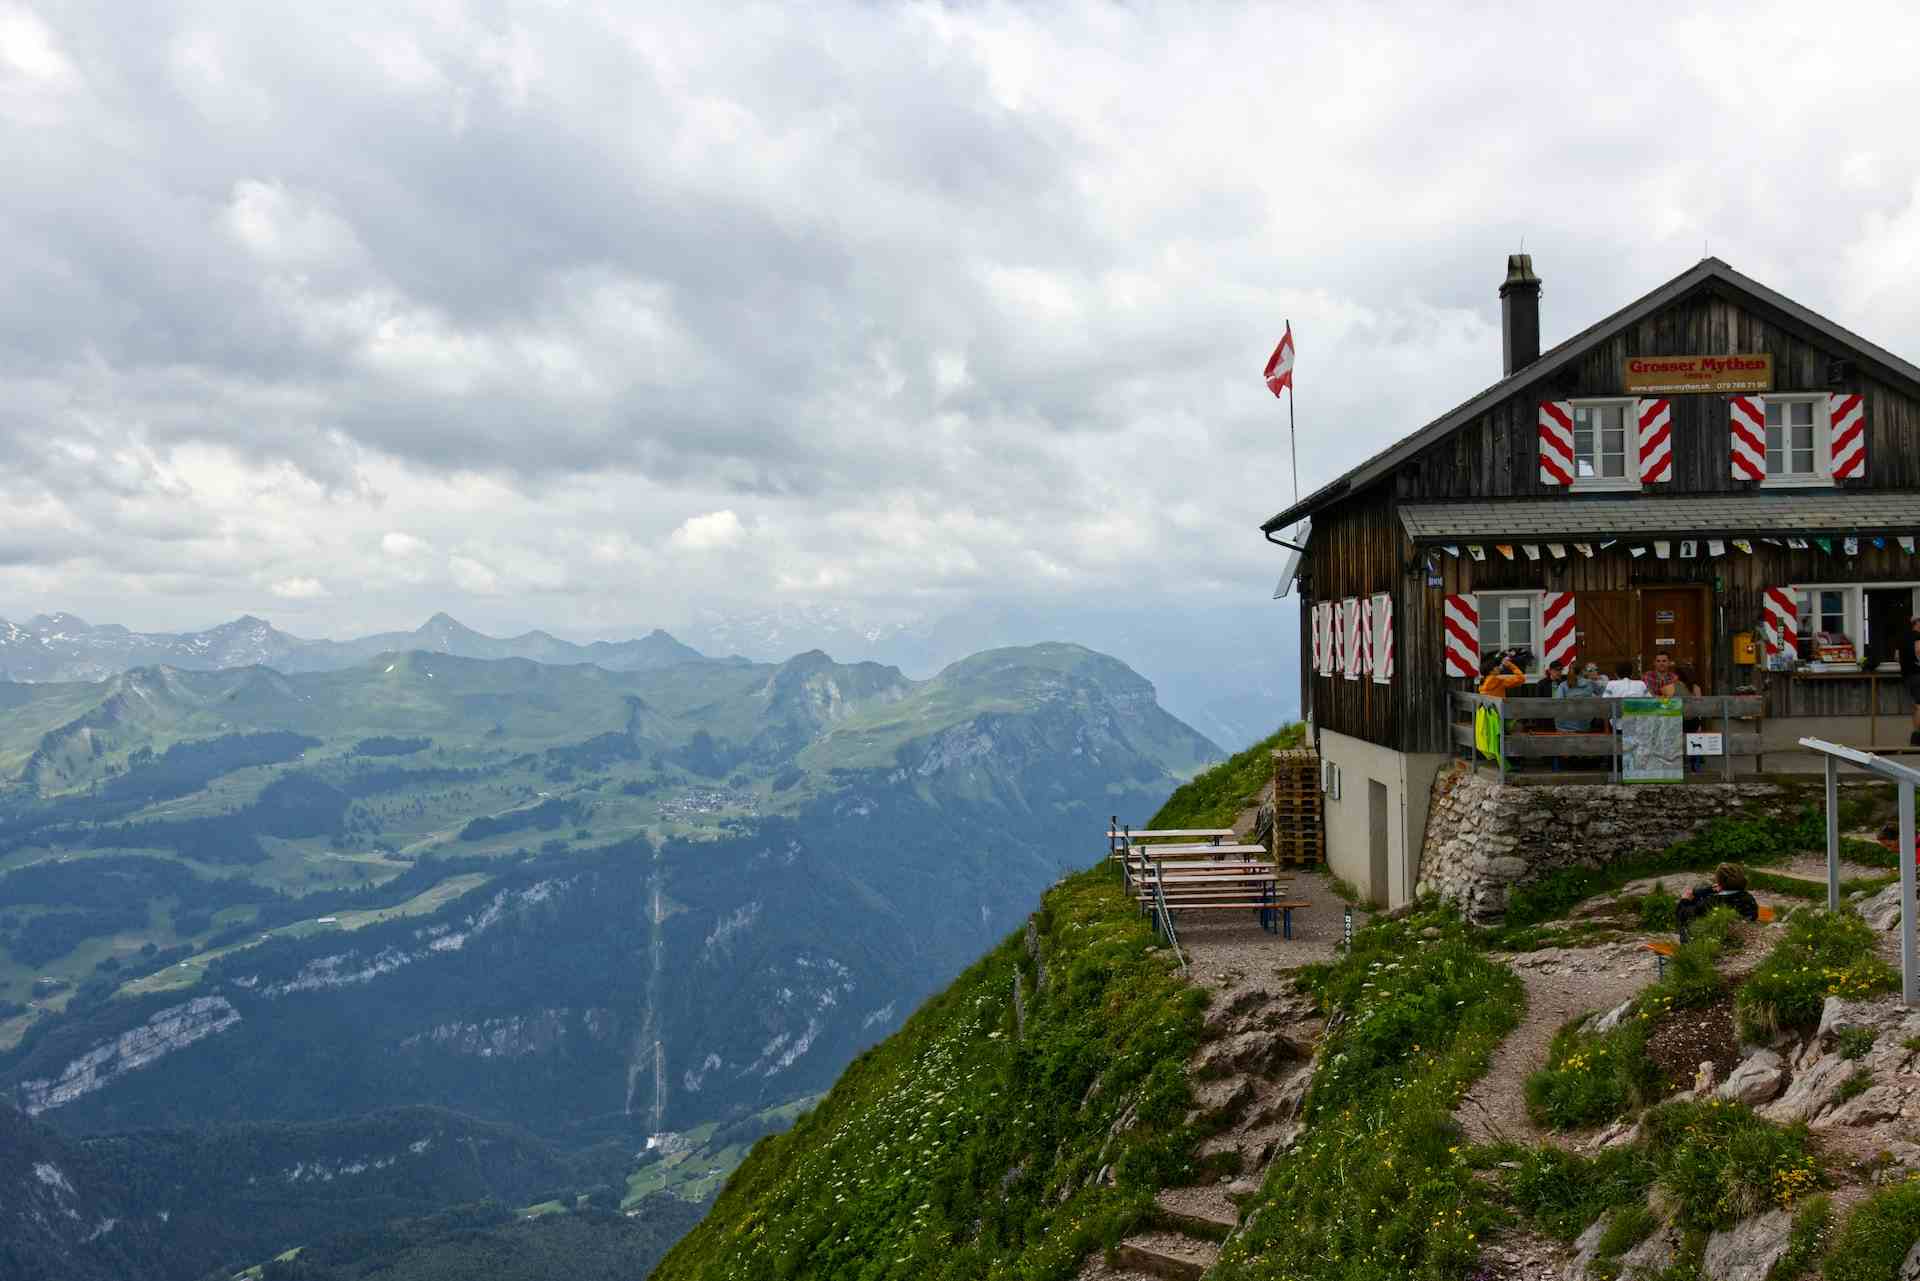 Kellerei Kloster Einsiedeln, Produzent in Einsiedeln Kanton Schwyz in der Schweiz